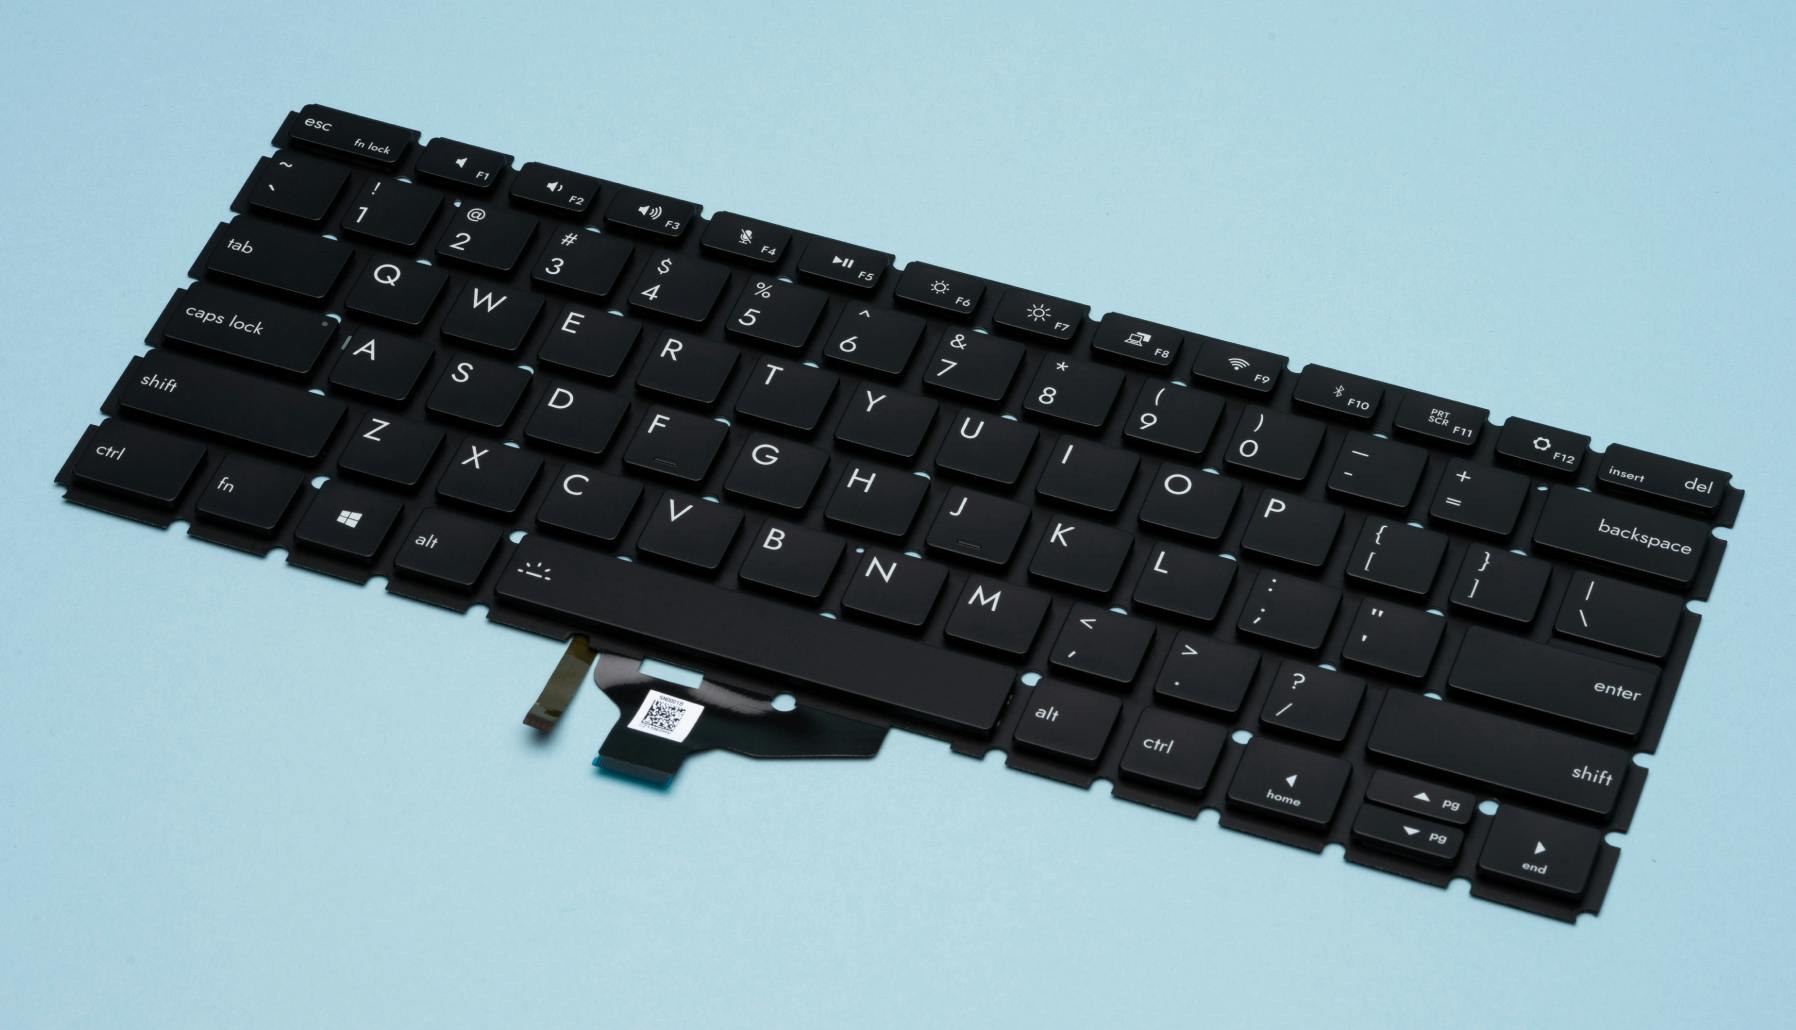 keyboard by itself